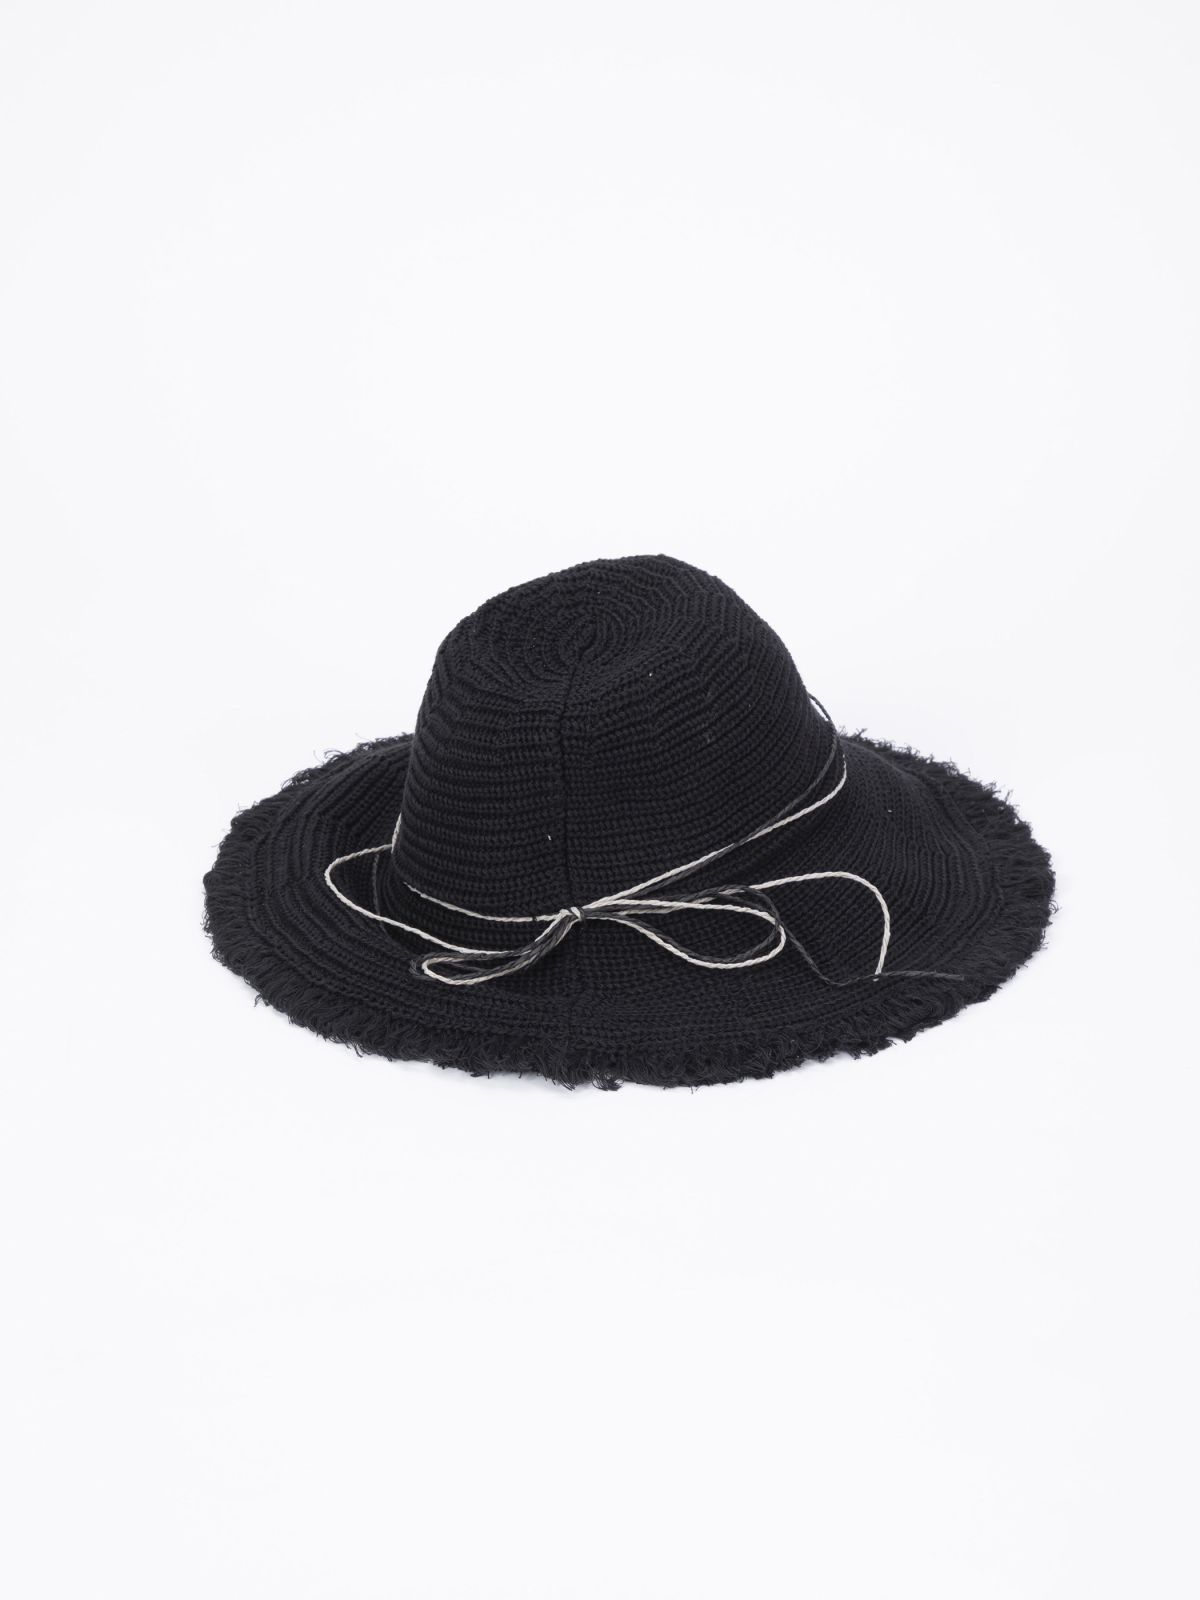  כובע רחב שוליים / נשים של YANGA